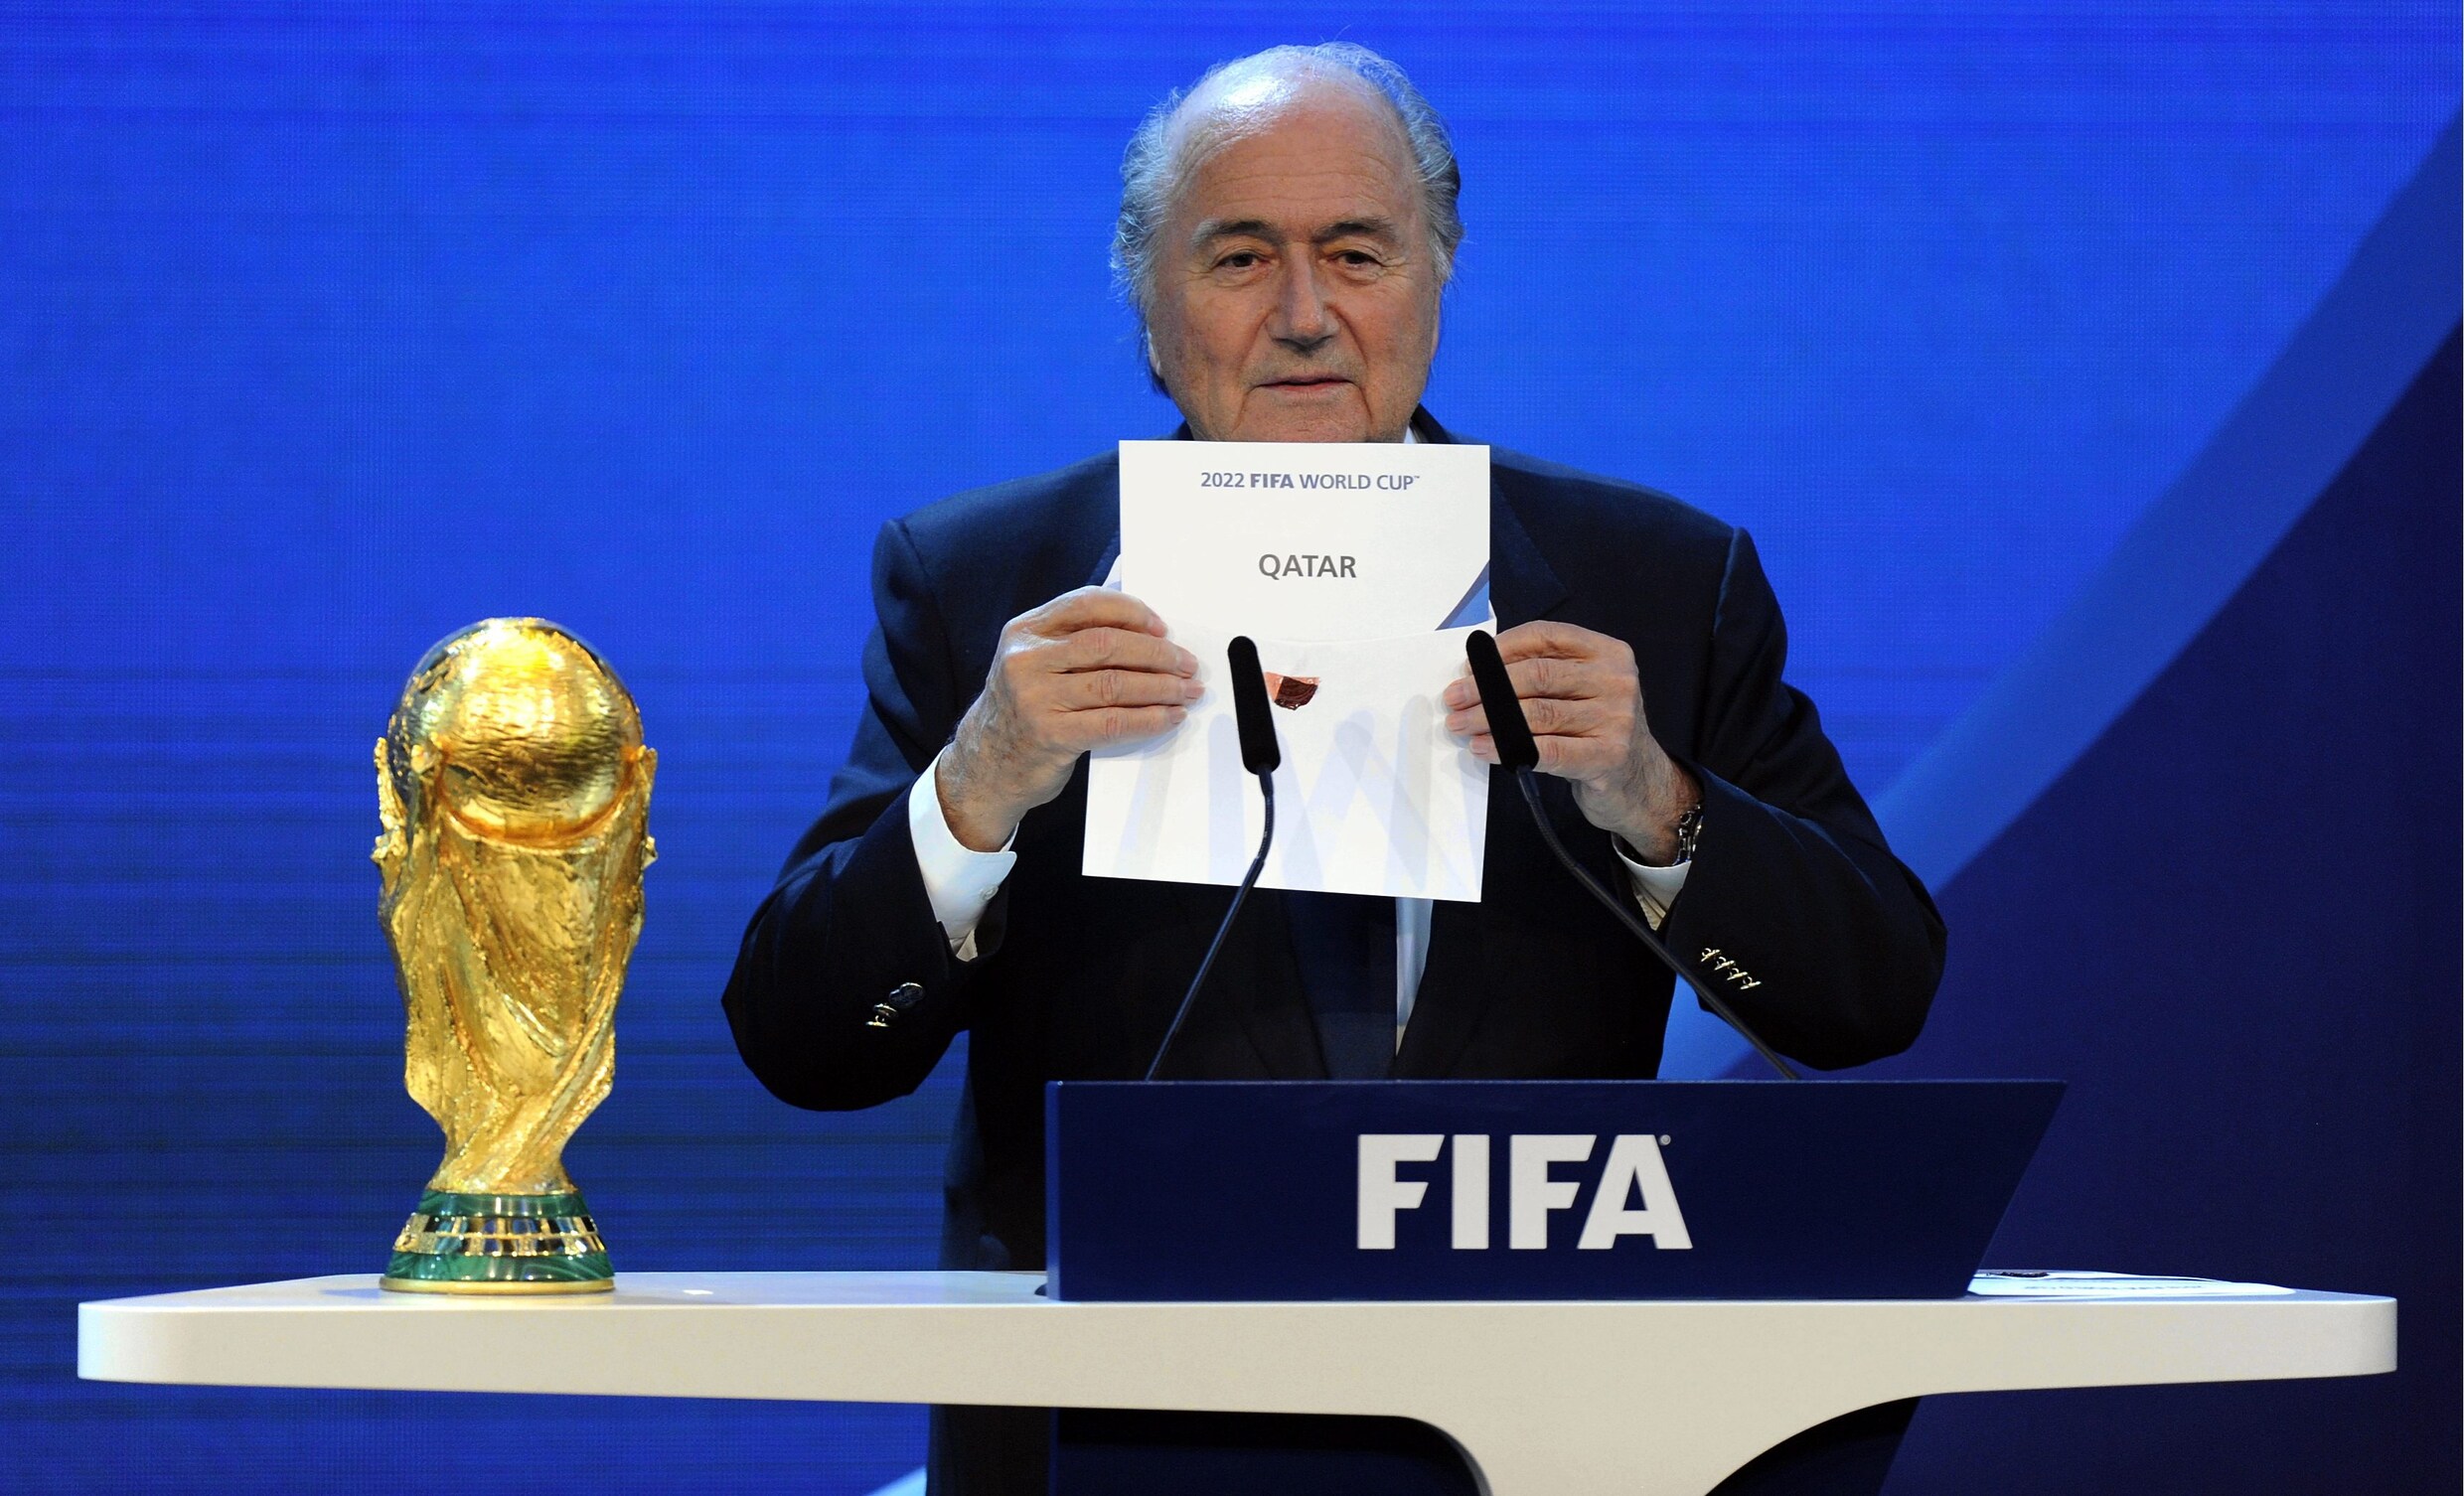 "Qatar saboteerde tegenstanders tijdens campagnestrijd om WK voetbal te organiseren"